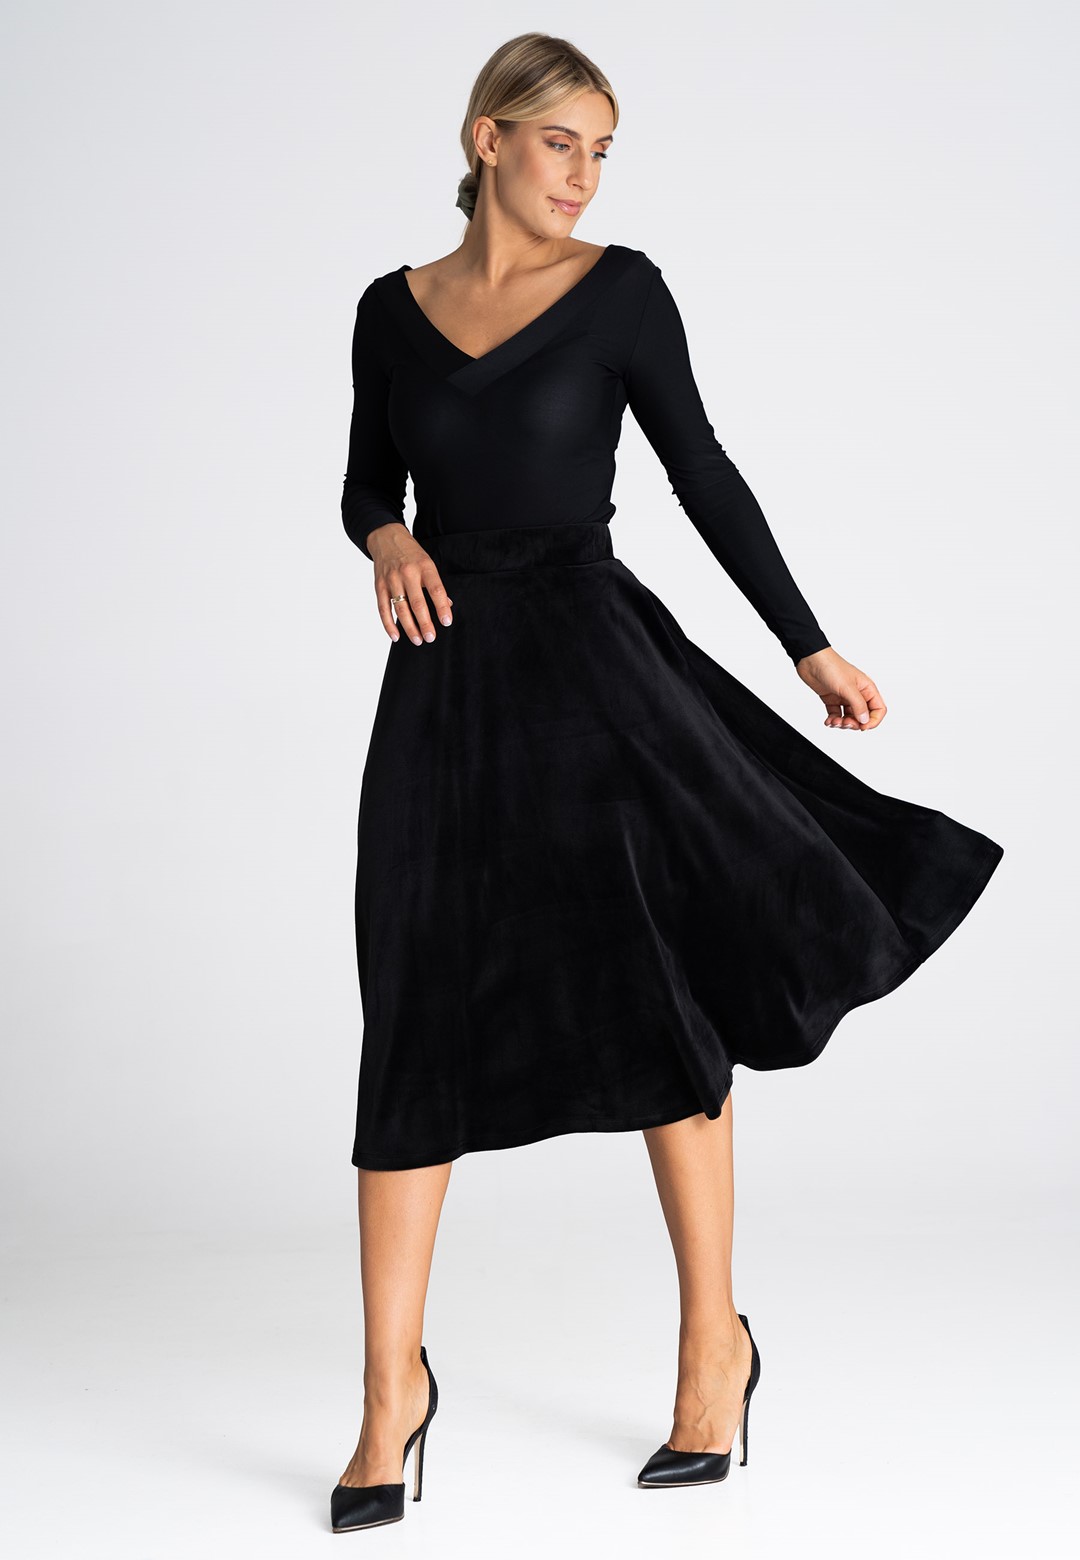 Černá midi sukně s kapsami M964 black Velikost: S/M